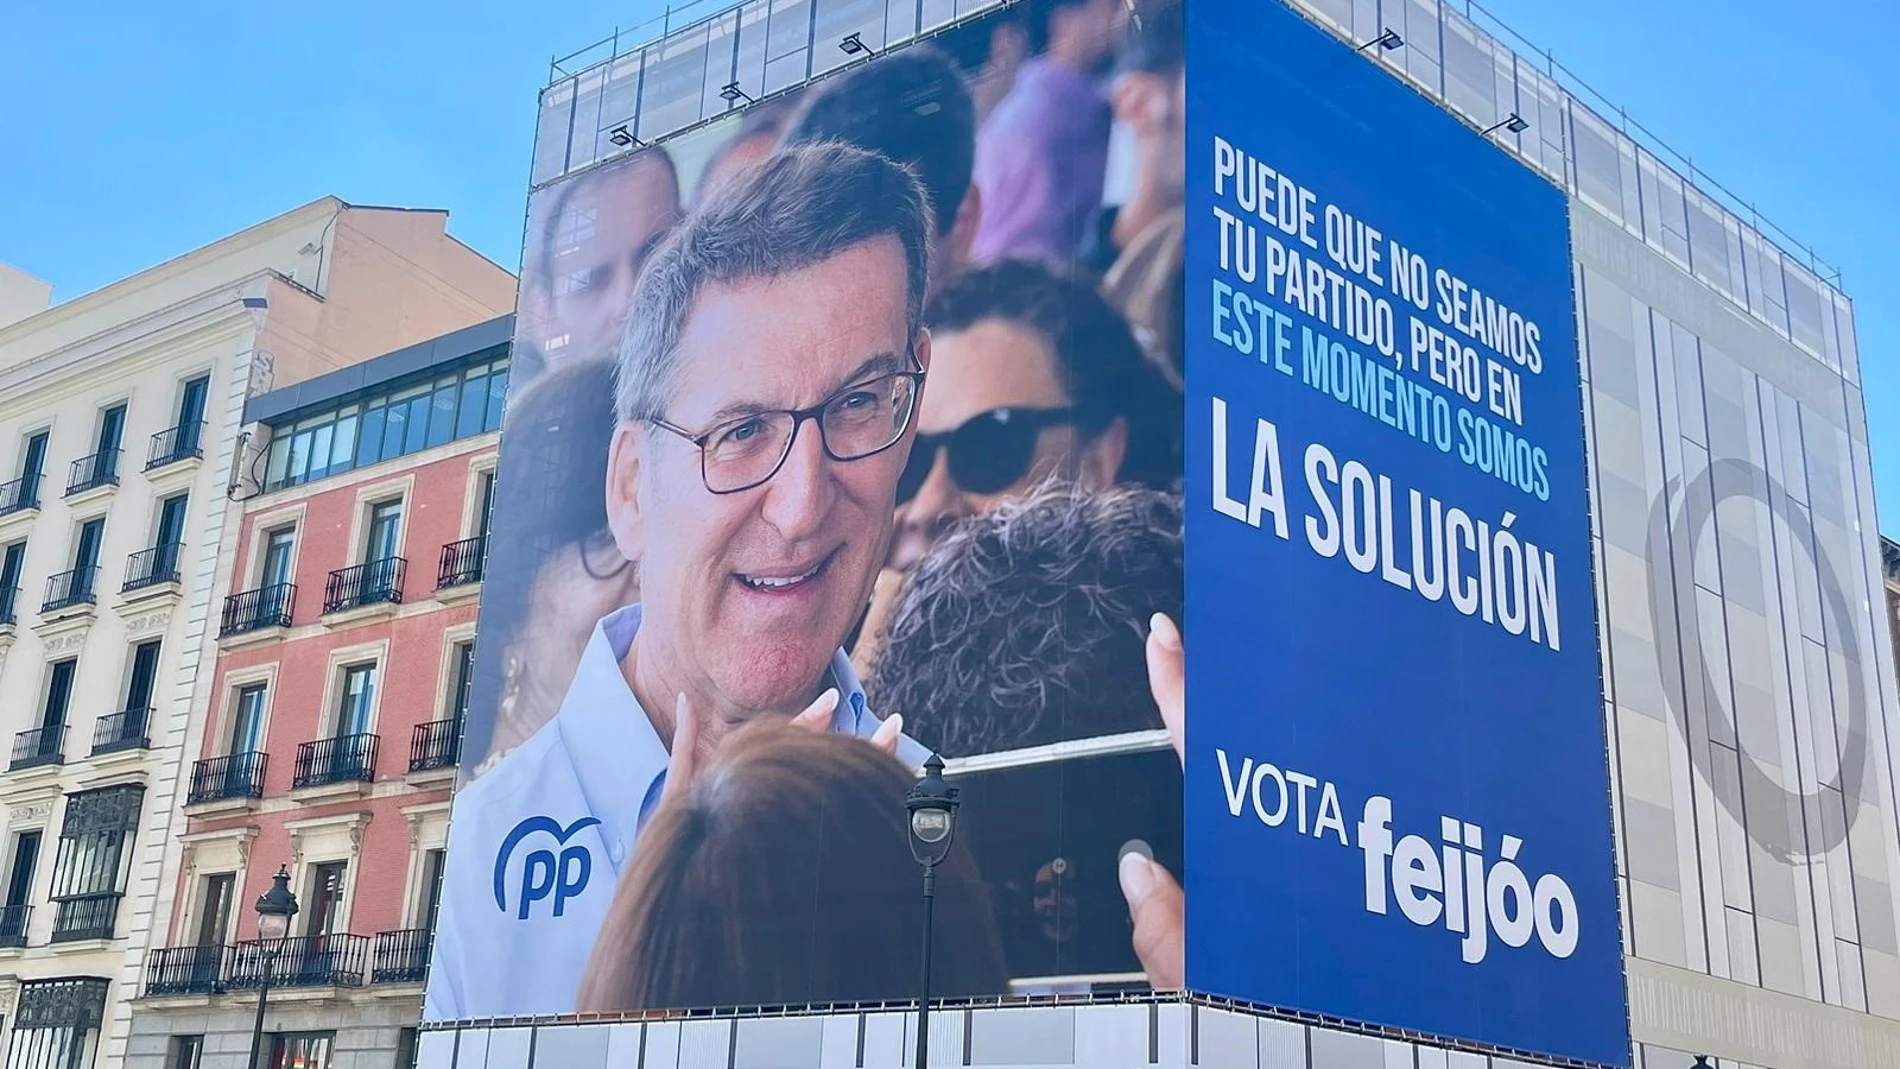 El PP cuelga una lona apelando al voto útil a Feijóo: "Puede que no seamos tu partido, pero somos la solución"